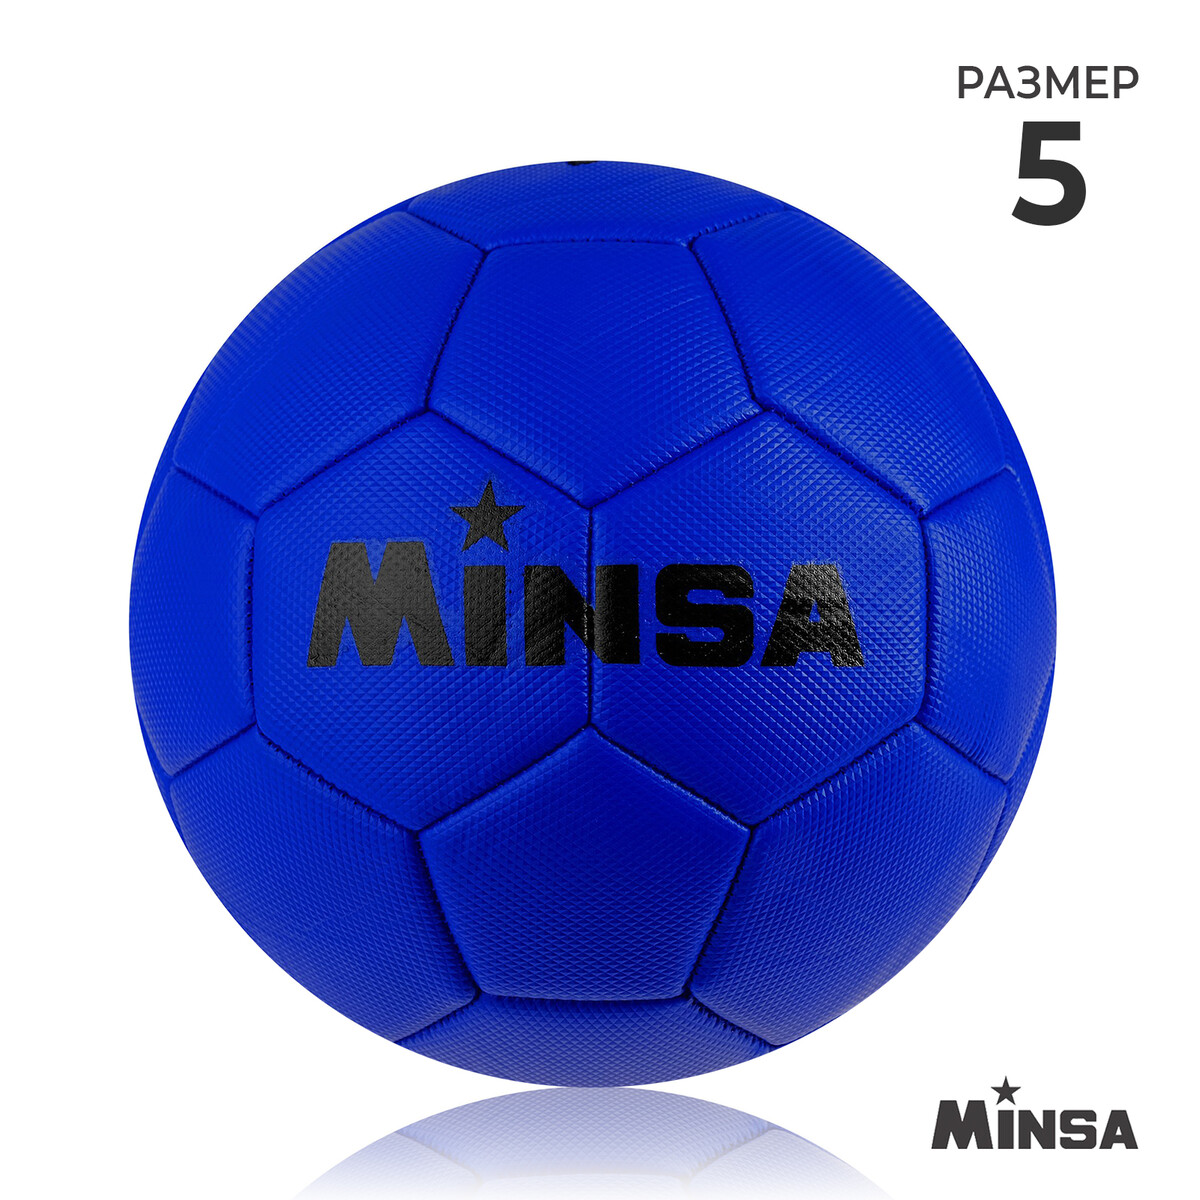 Мяч футбольный minsa, пвх, машинная сшивка, 32 панели, р. 5 мяч футбольный minsa classic пвх машинна сшивка 32 панели р 5